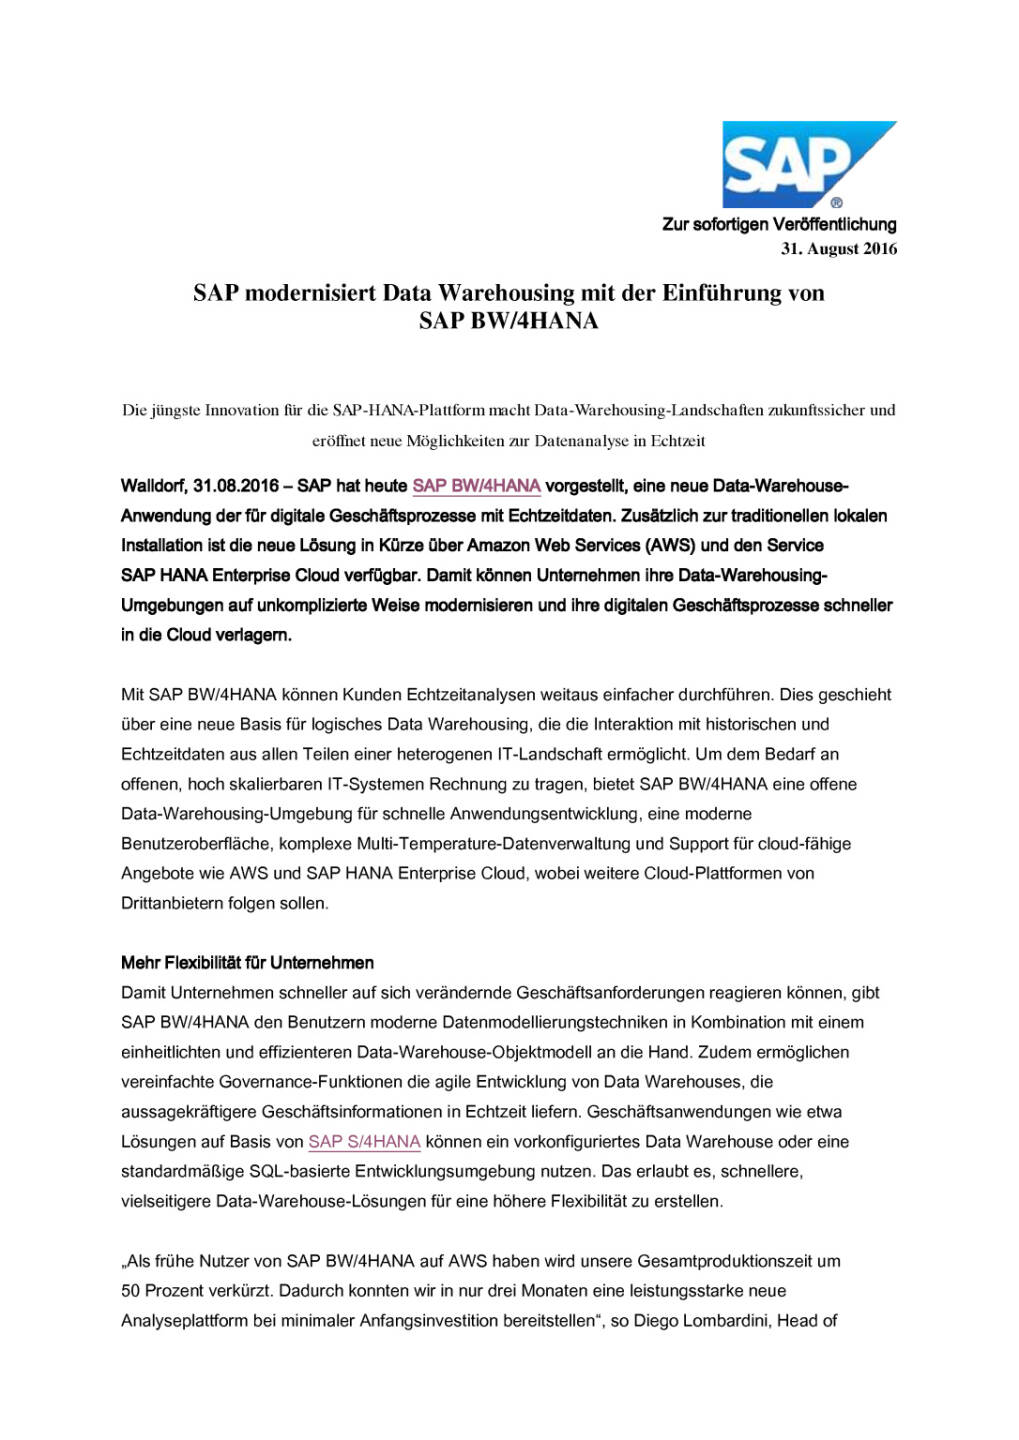 SAP modernisiert Data Warehousing, Seite 1/4, komplettes Dokument unter http://boerse-social.com/static/uploads/file_1697_sap_modernisiert_data_warehousing.pdf